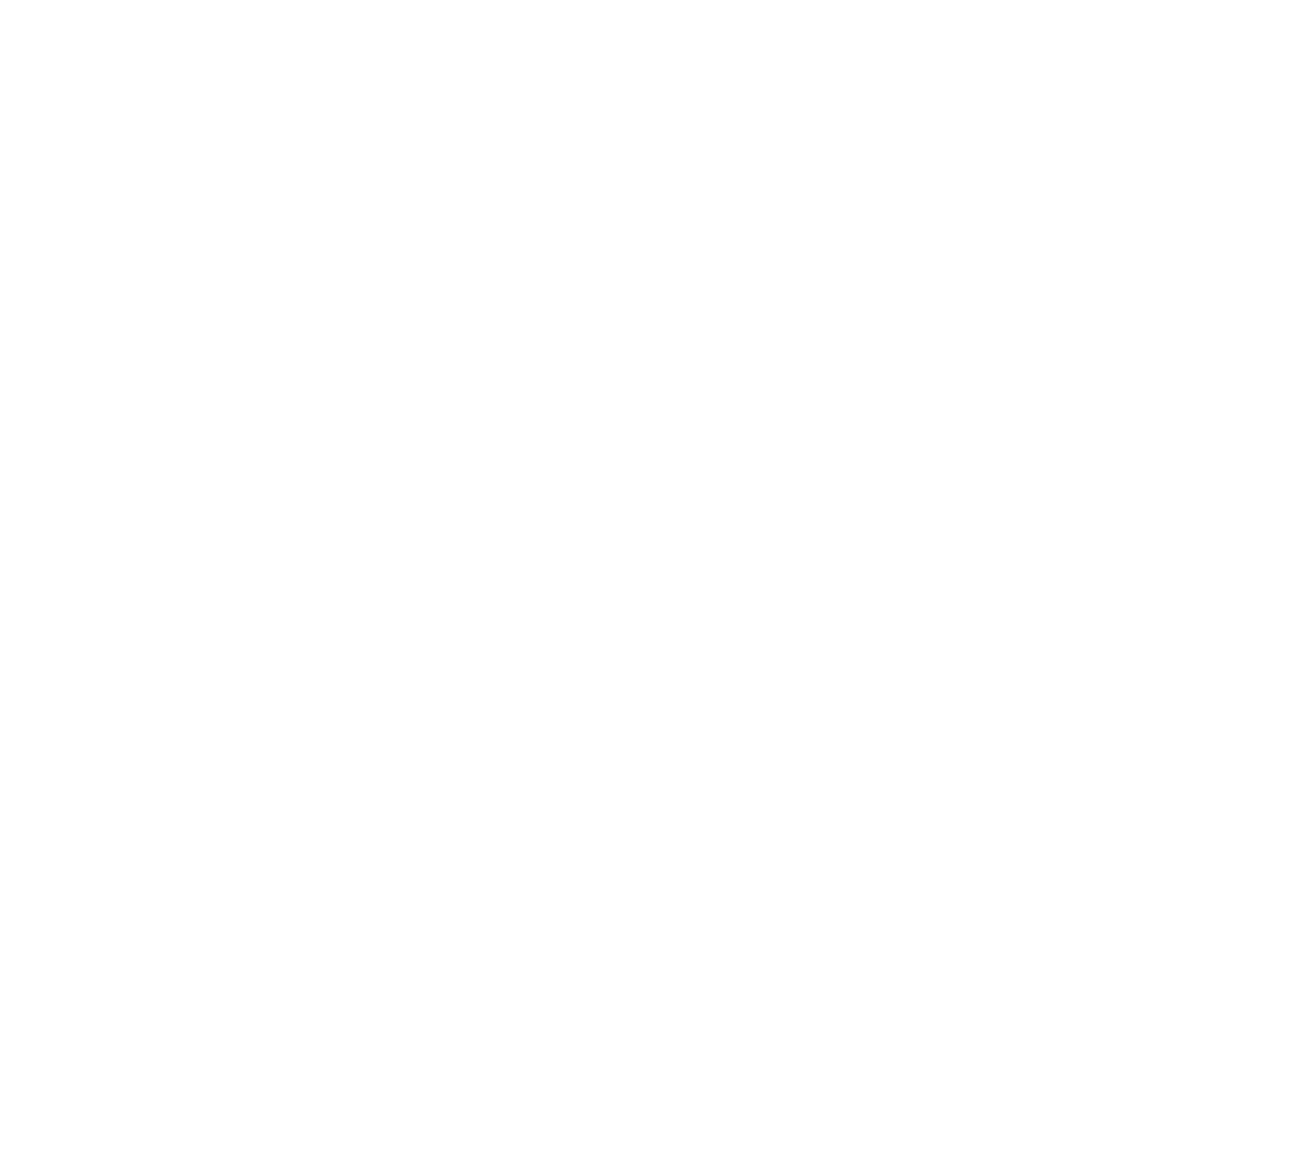 IndieSpainJam23 Best Solodev Game winner